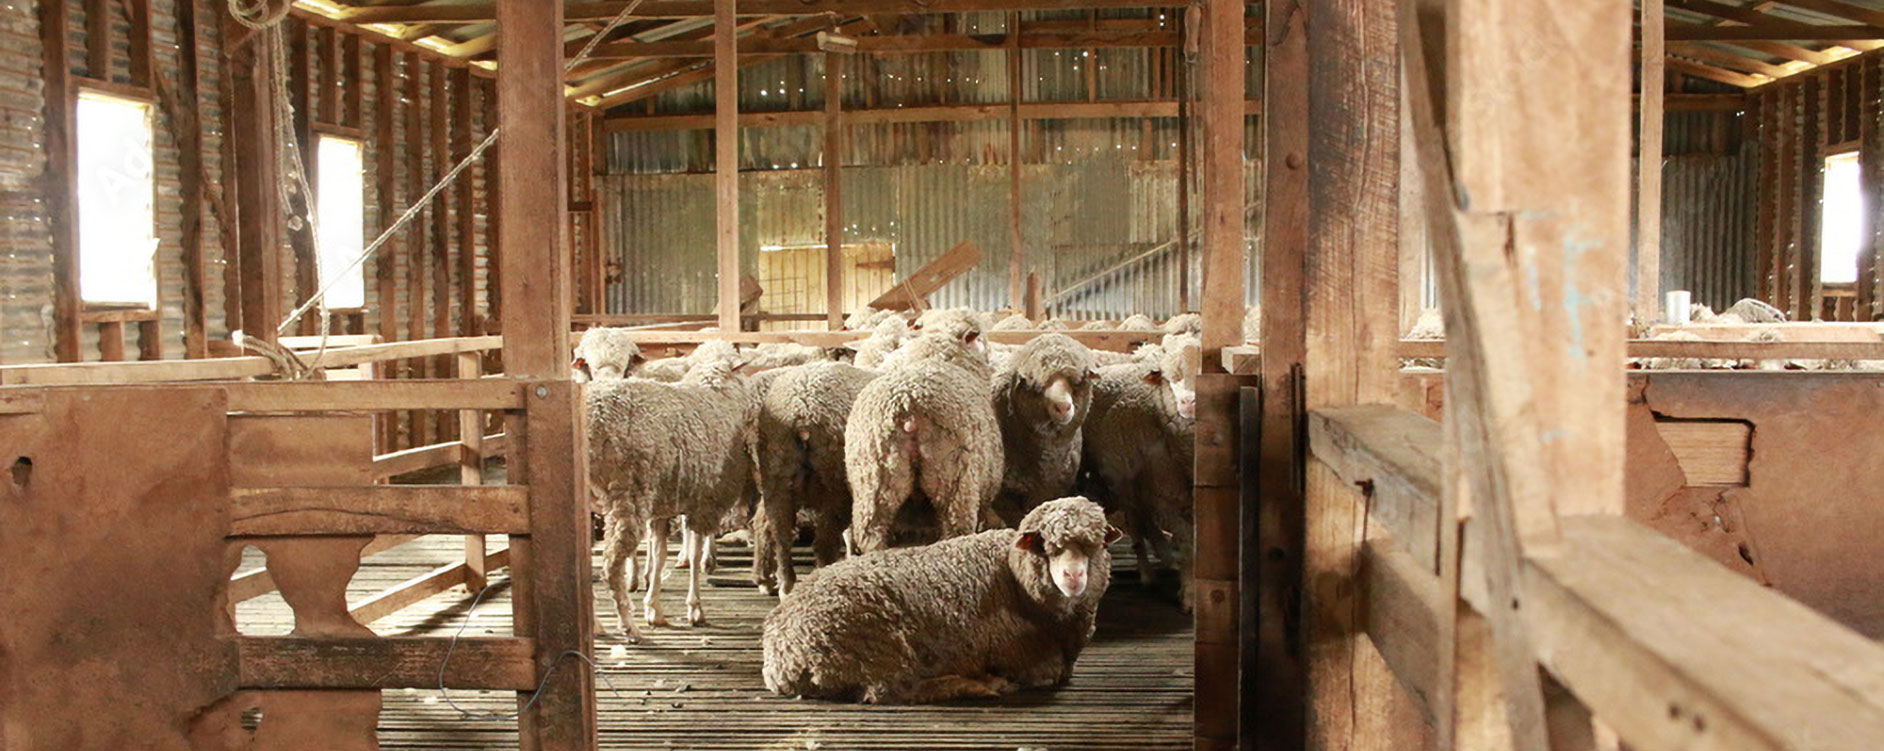 Sheep in shearing shed